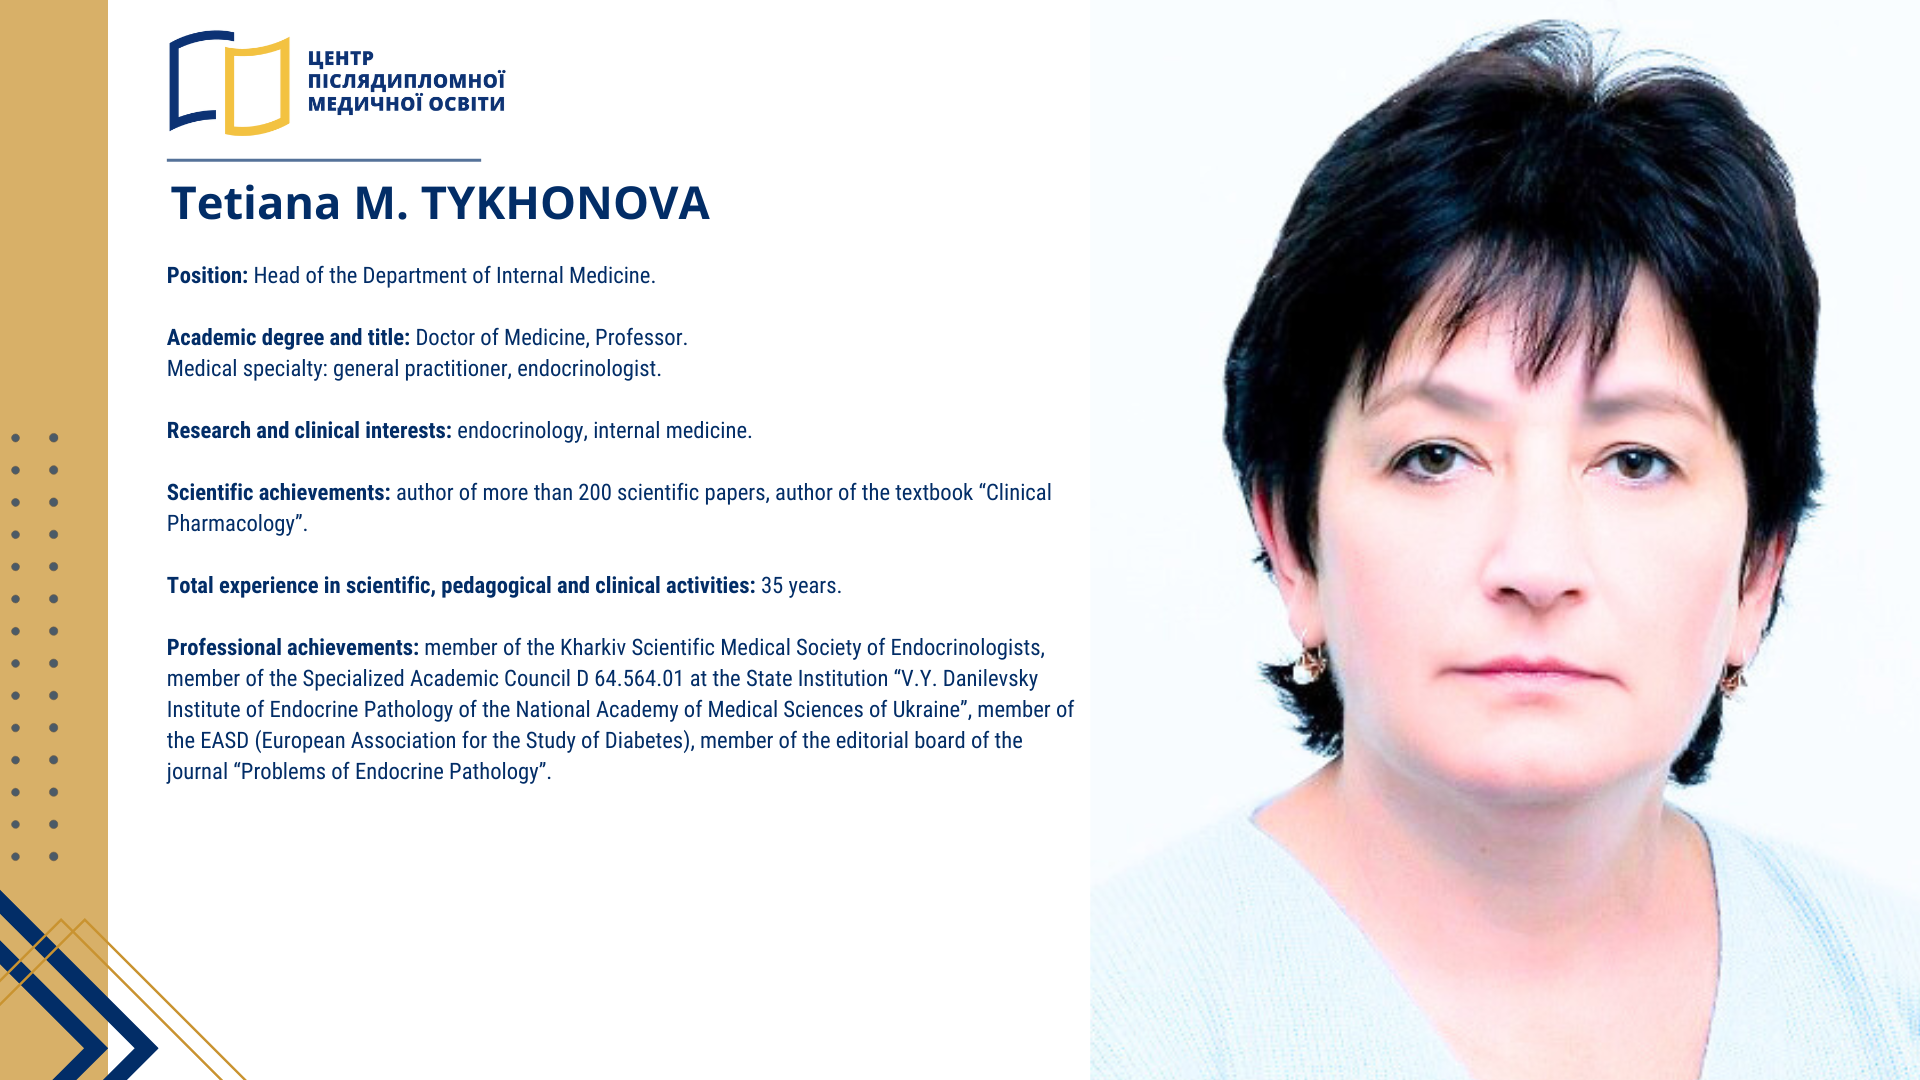 Tetiana M. TYKHONOVA